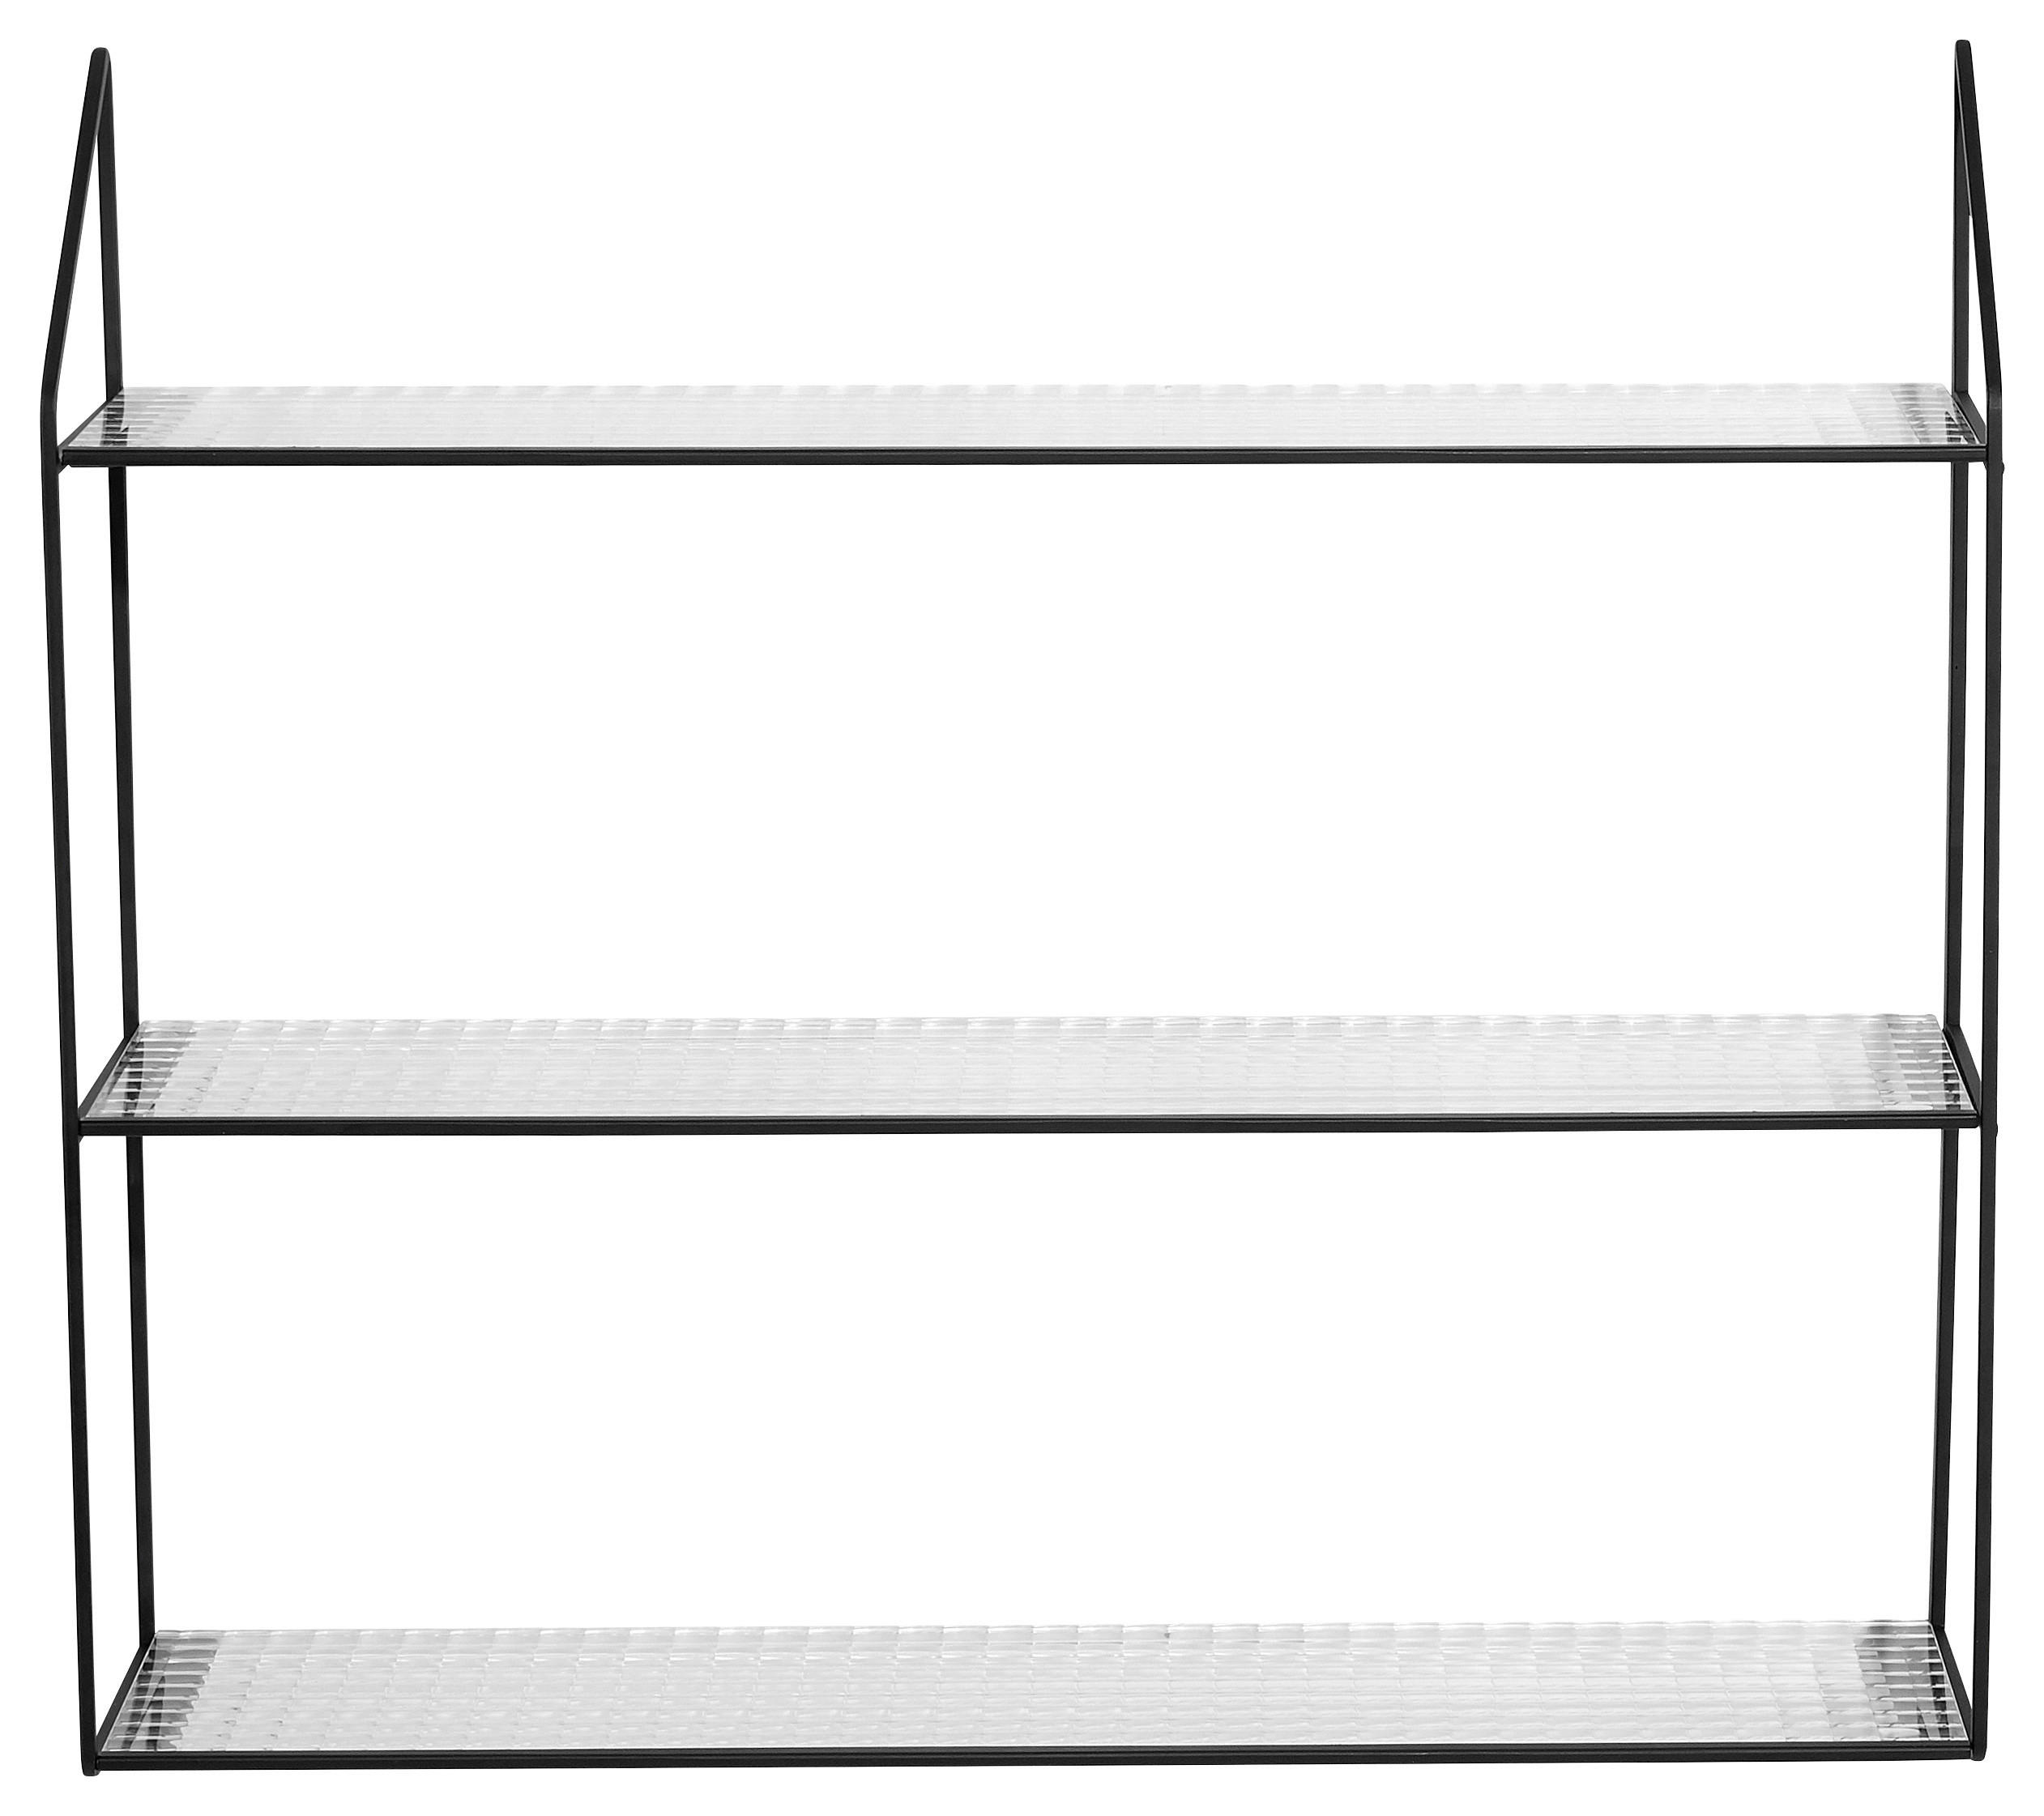 GLASHYLLA i 60/54/15 cm svart, transparent  - svart/transparent, Modern, metall/glas (60/54/15cm)